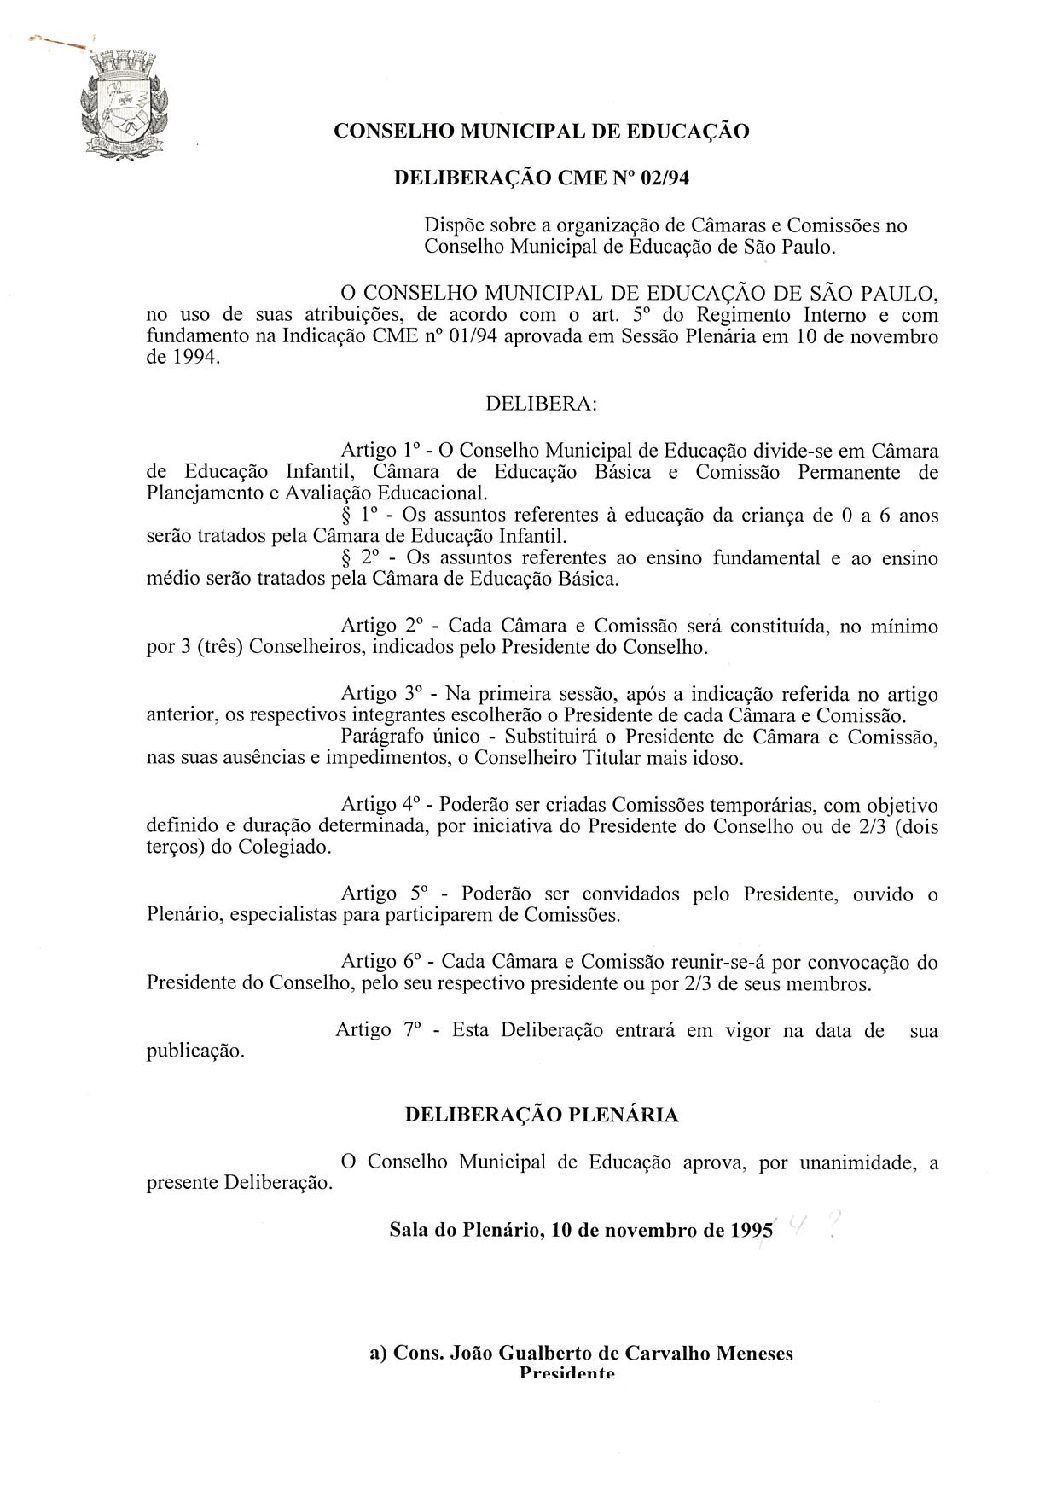 Deliberação CME nº 02/1994 - Dispõe sobre a organização de Câmaras e Comissões no Conselho Municipal de Educação de São Paulo